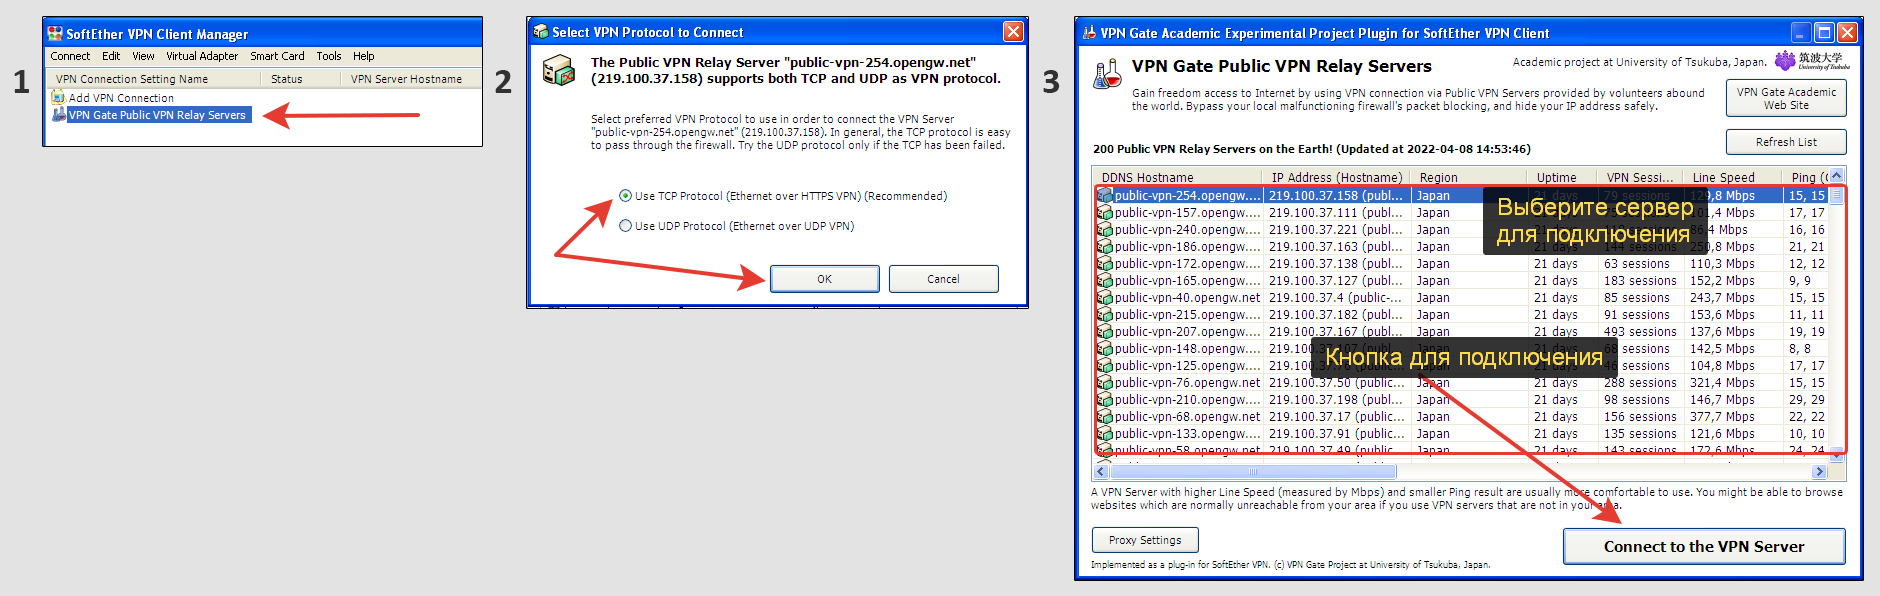 Запуск приложения VPN Gate на Windows XP и подключение к серверам.